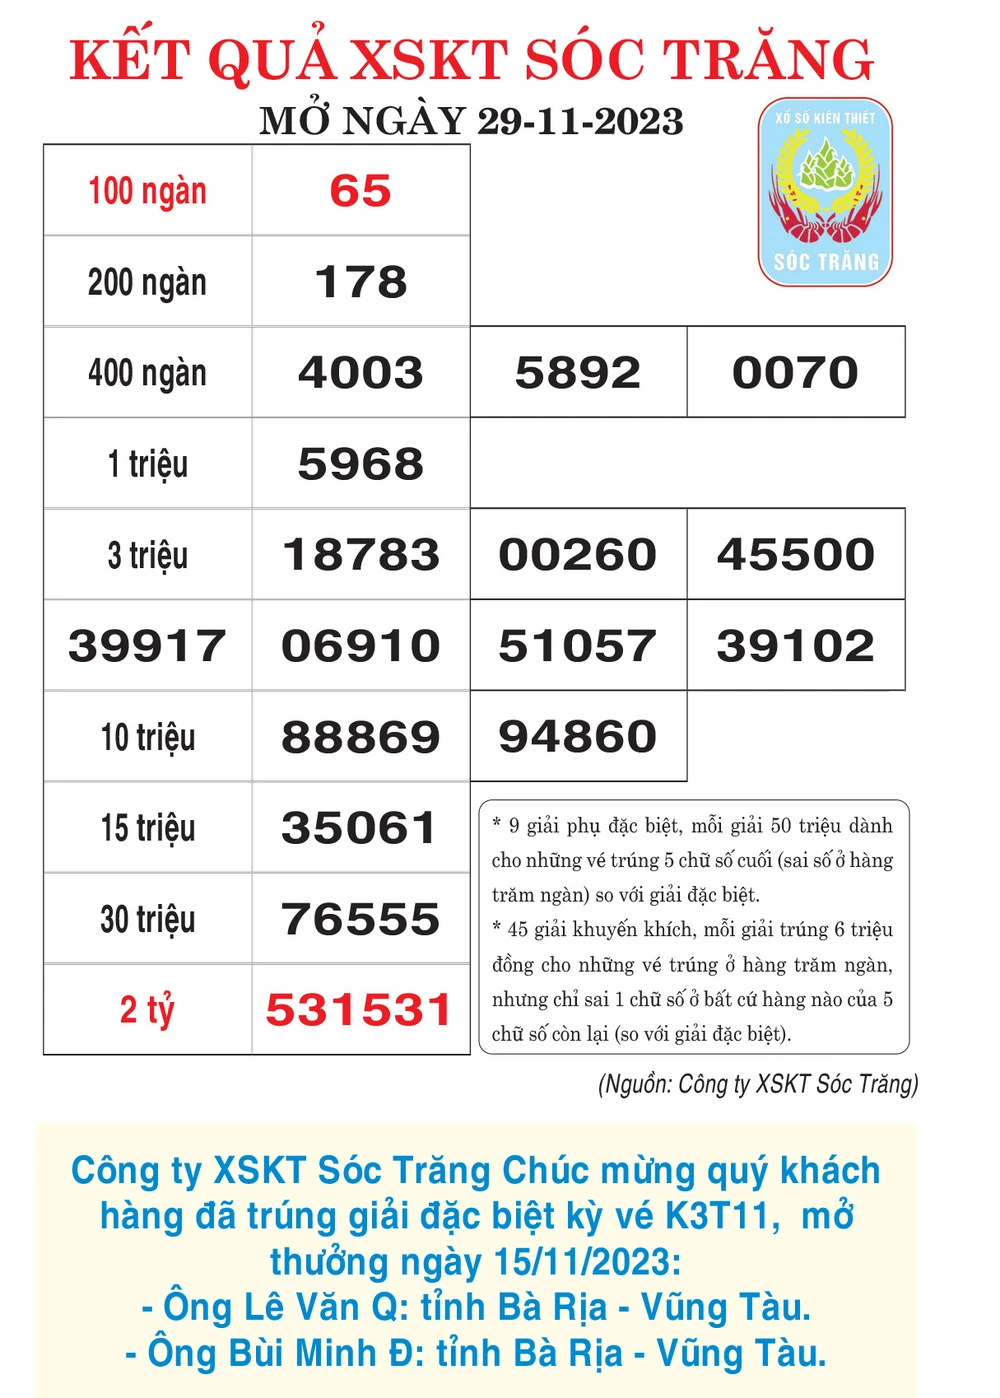 Kết quả XSKT Sóc Trăng, Đồng Nai ngày 29-11-2023